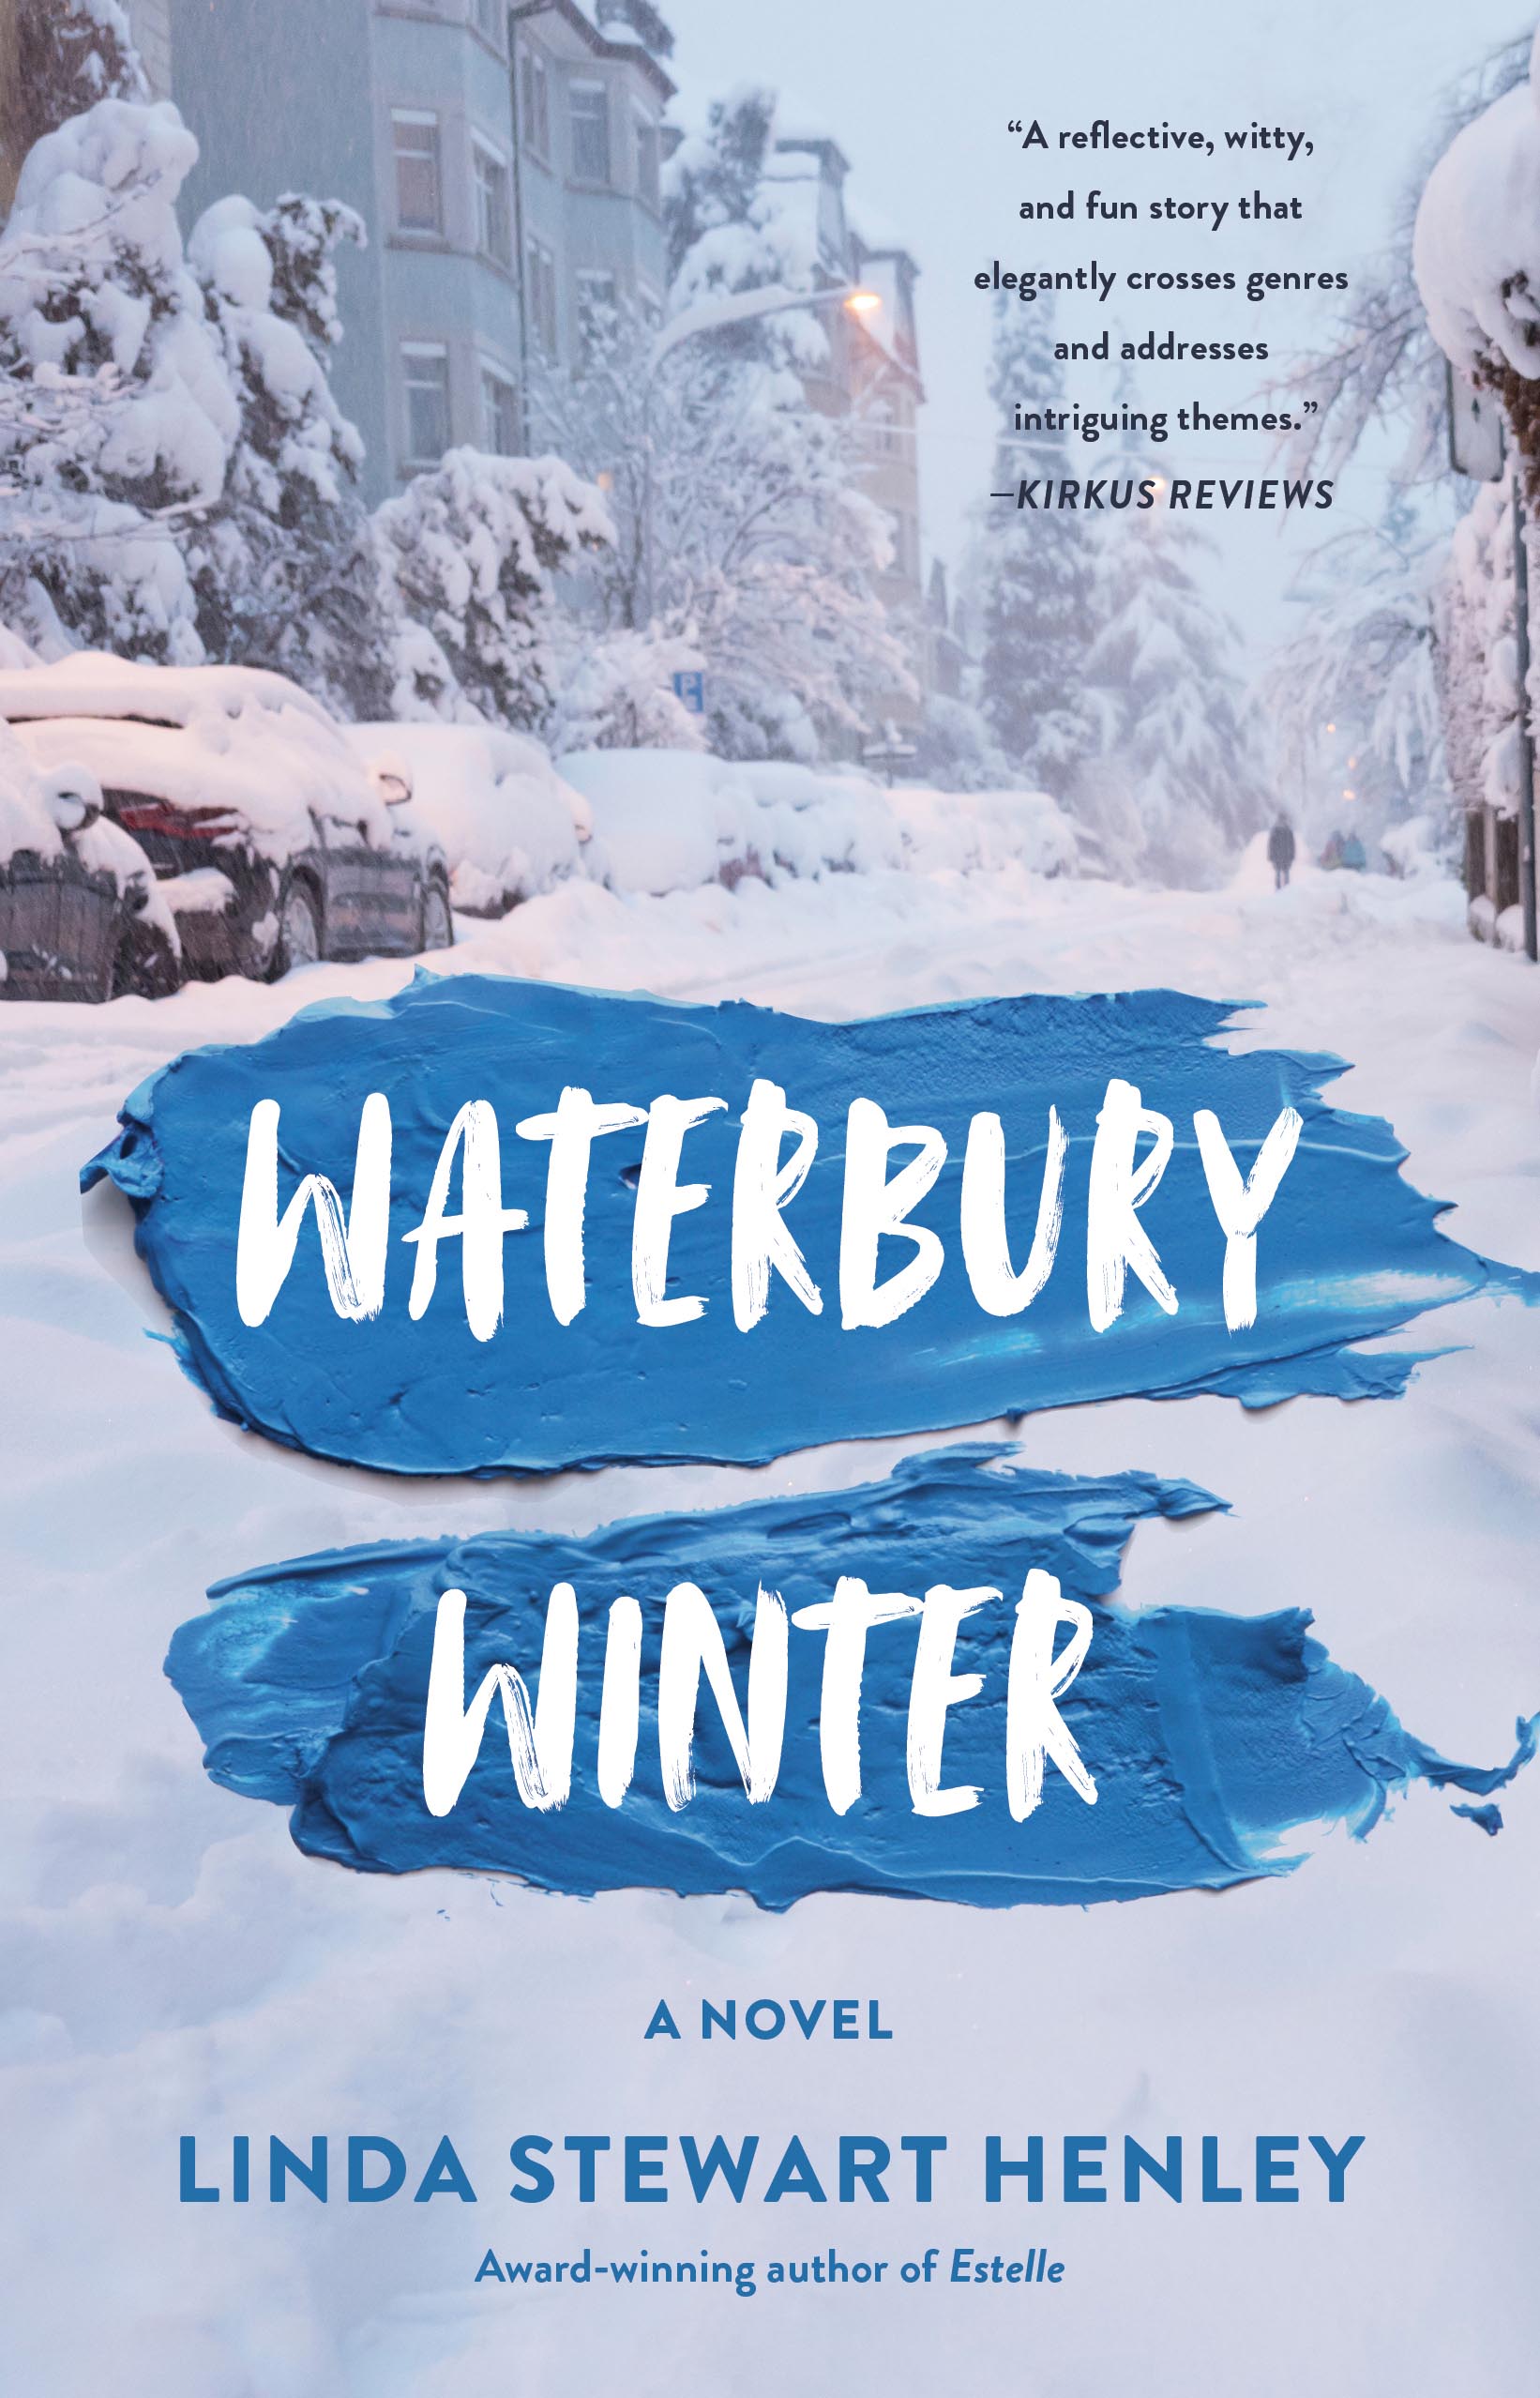 Waterbury Winter by Linda Stewart Henley